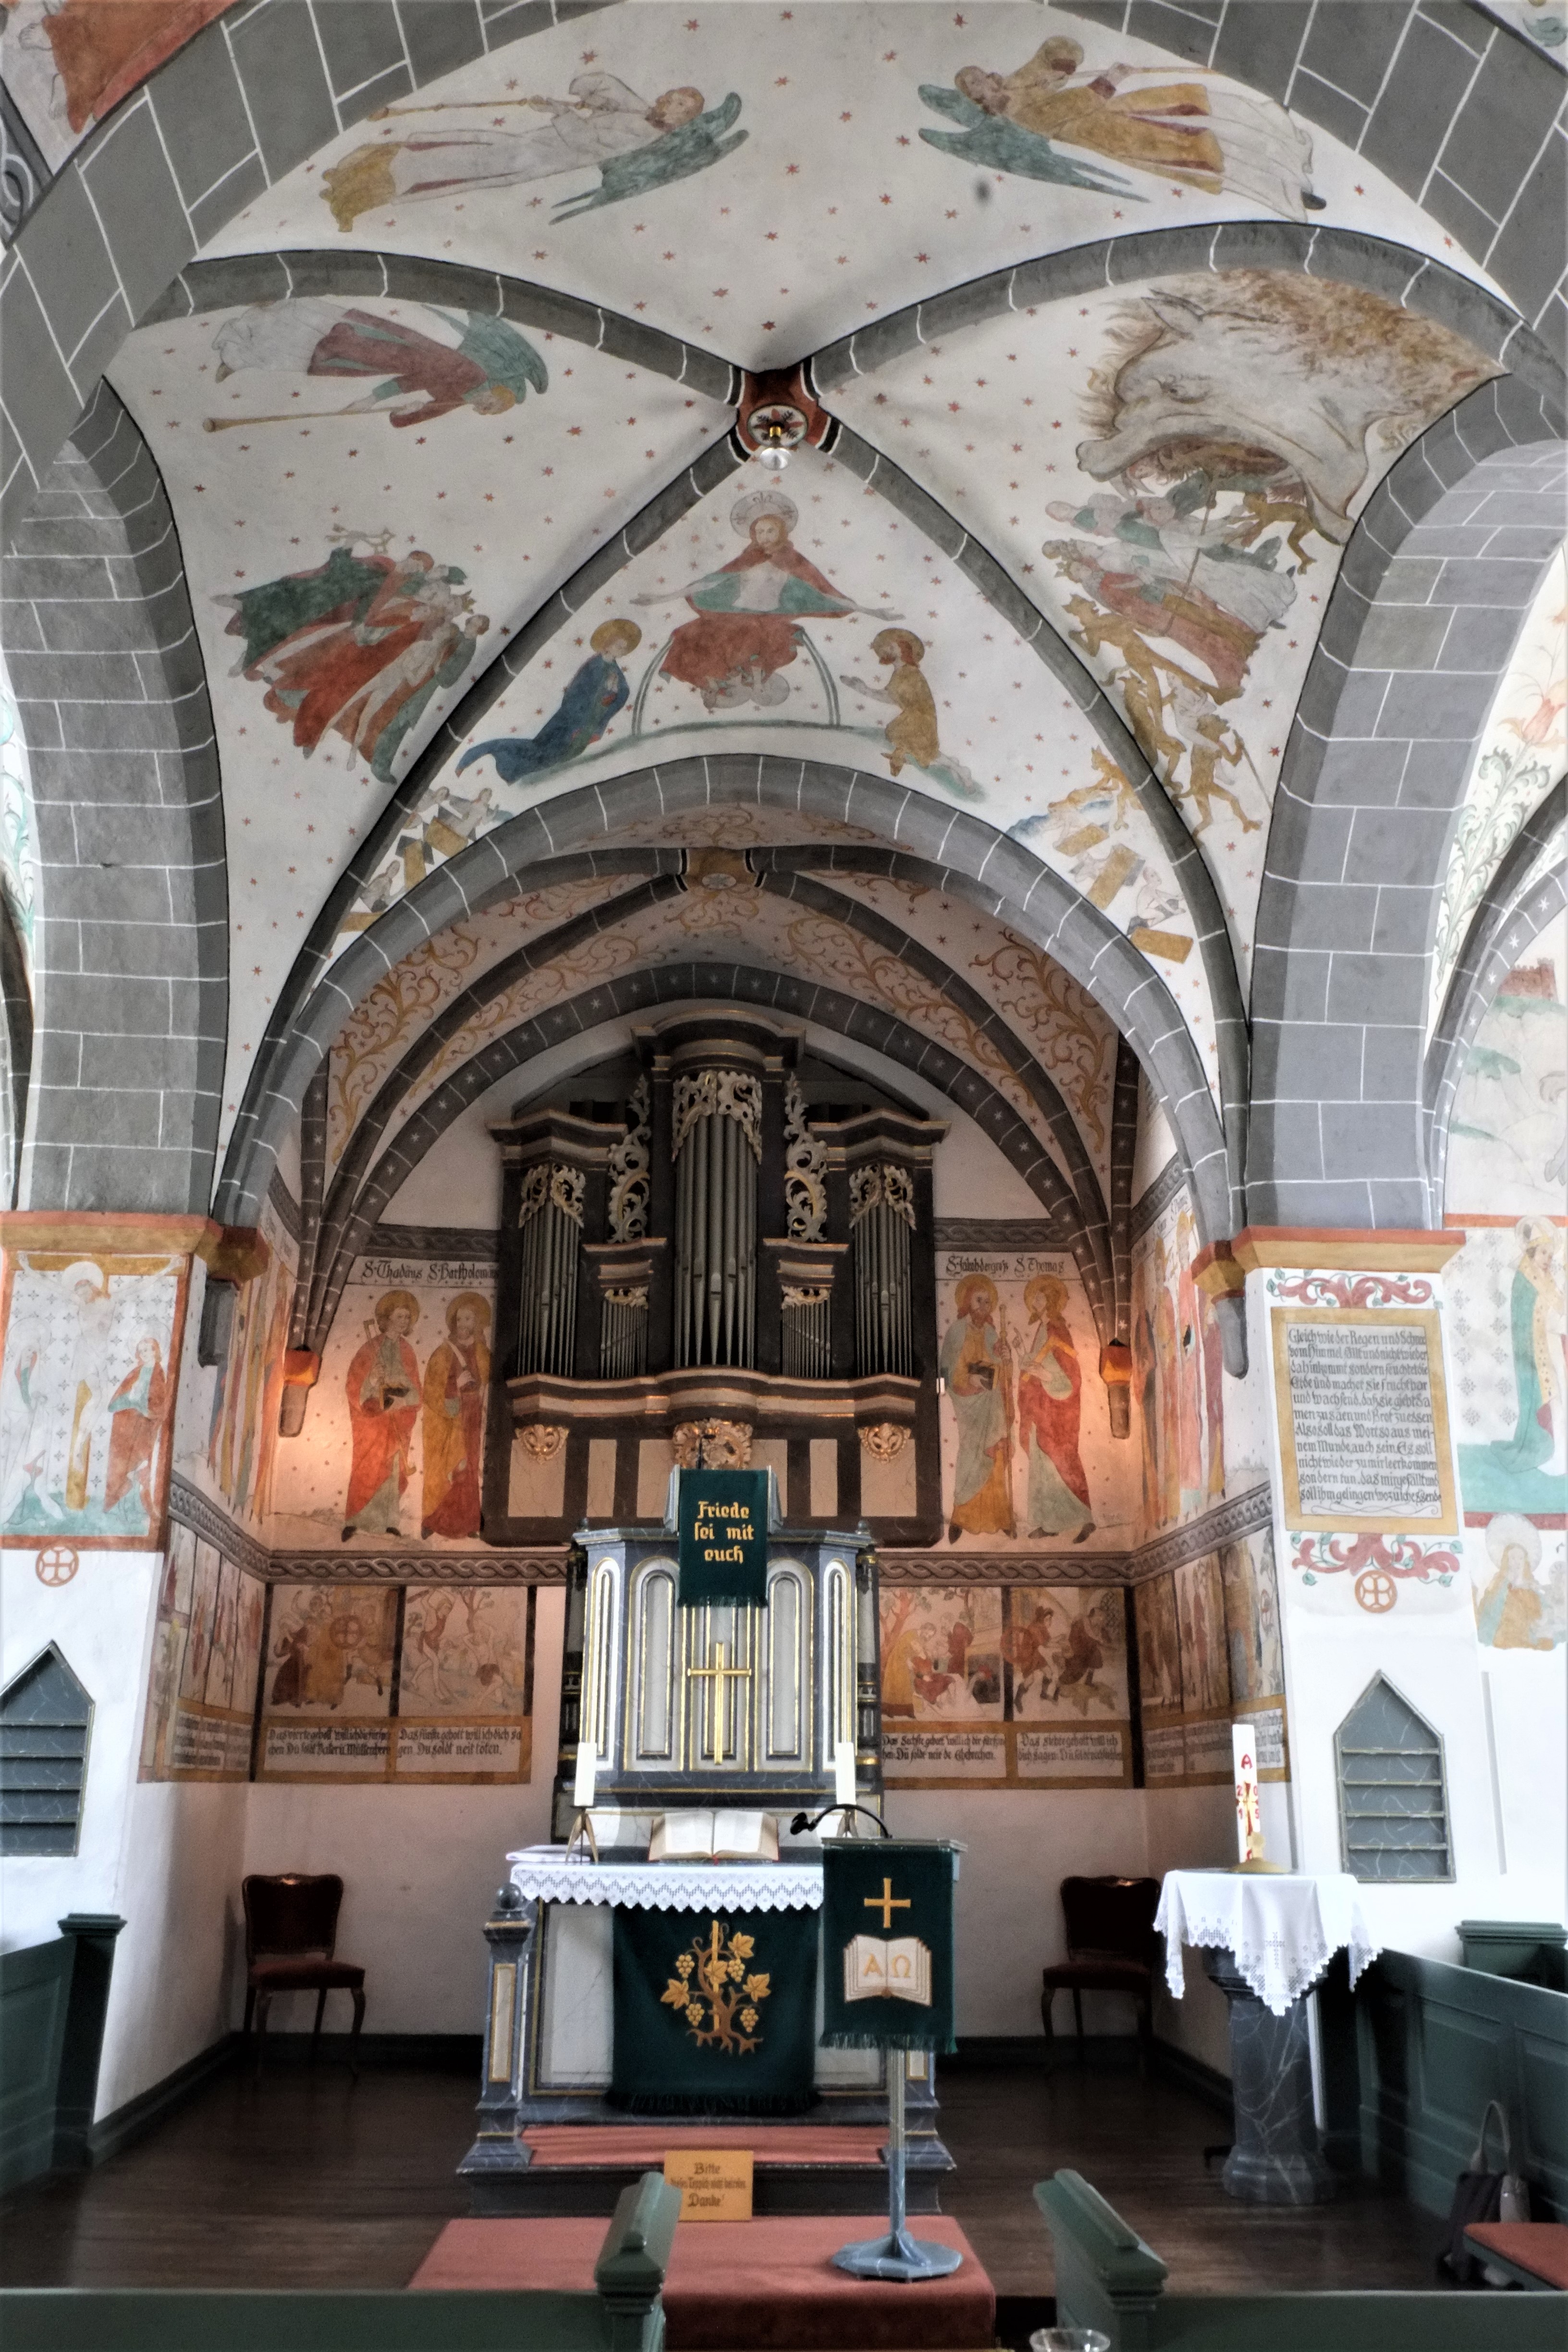 Bunte Kirche Lieberhausen - Altar und Orgel. Gespielt wird die Orgel von der gegenüberliegenden Empore aus.